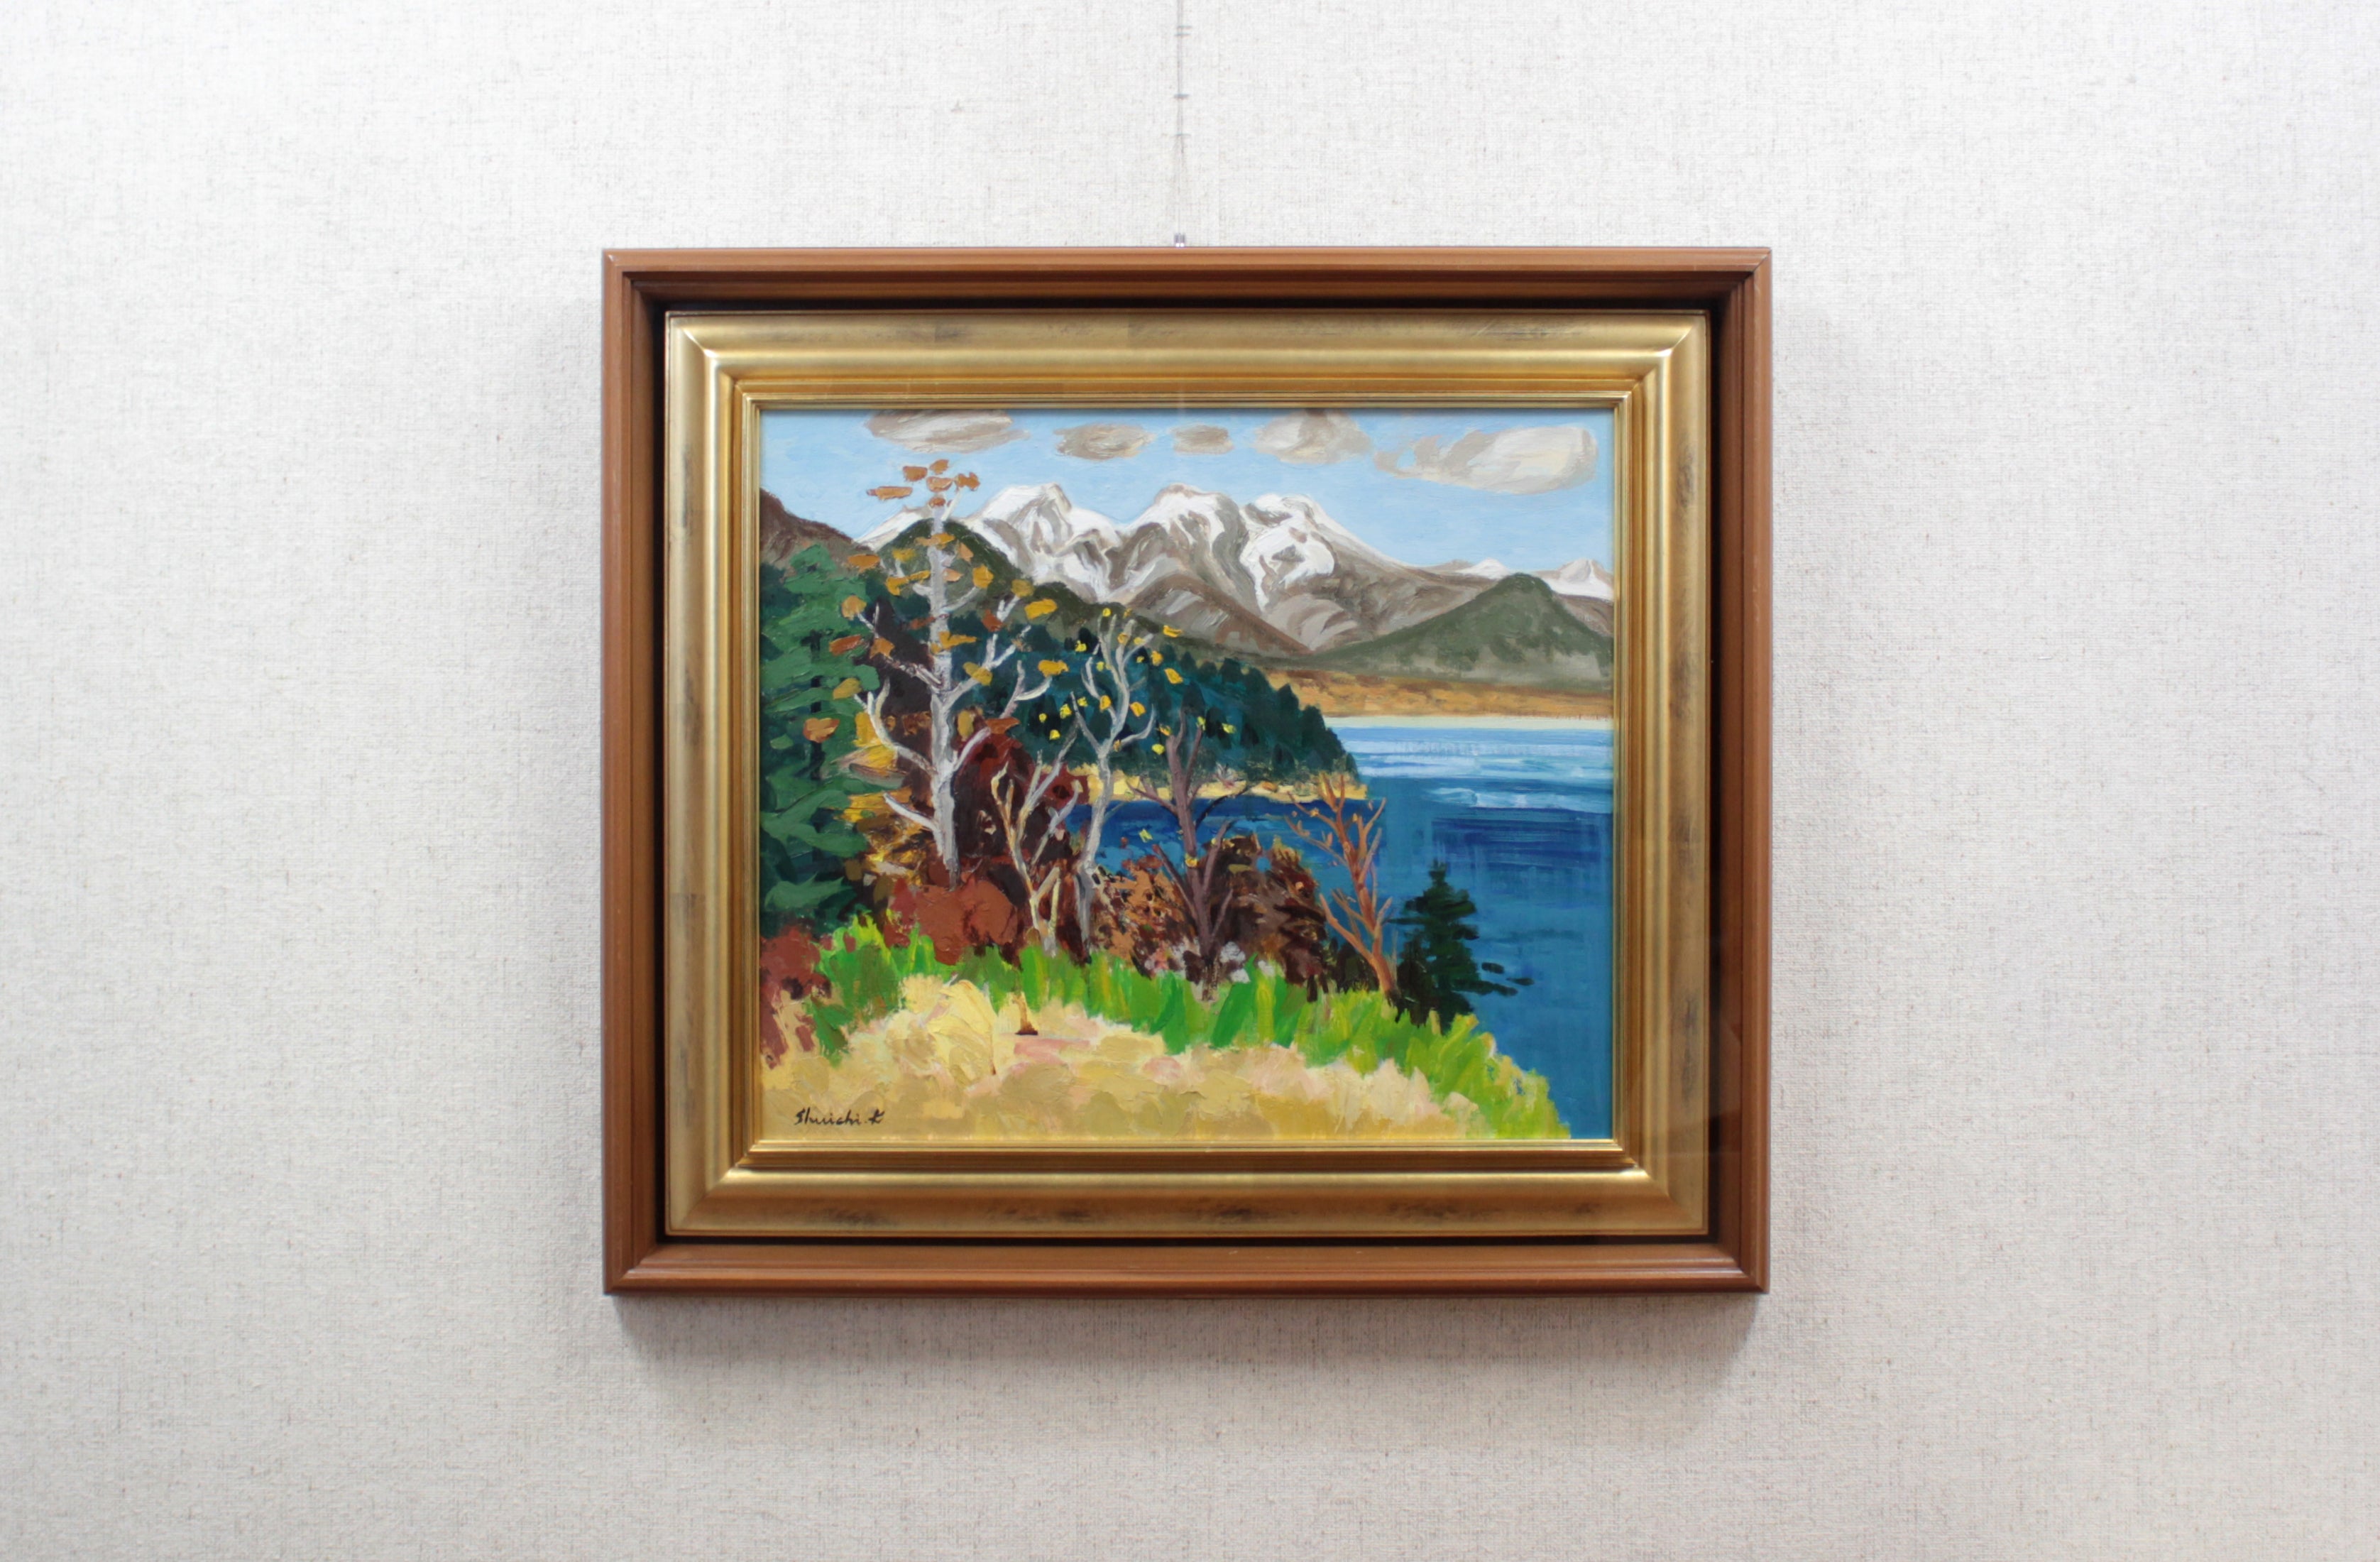 菊地秀一 『糠平湖と裏大雪山』 油彩画 - 北海道画廊